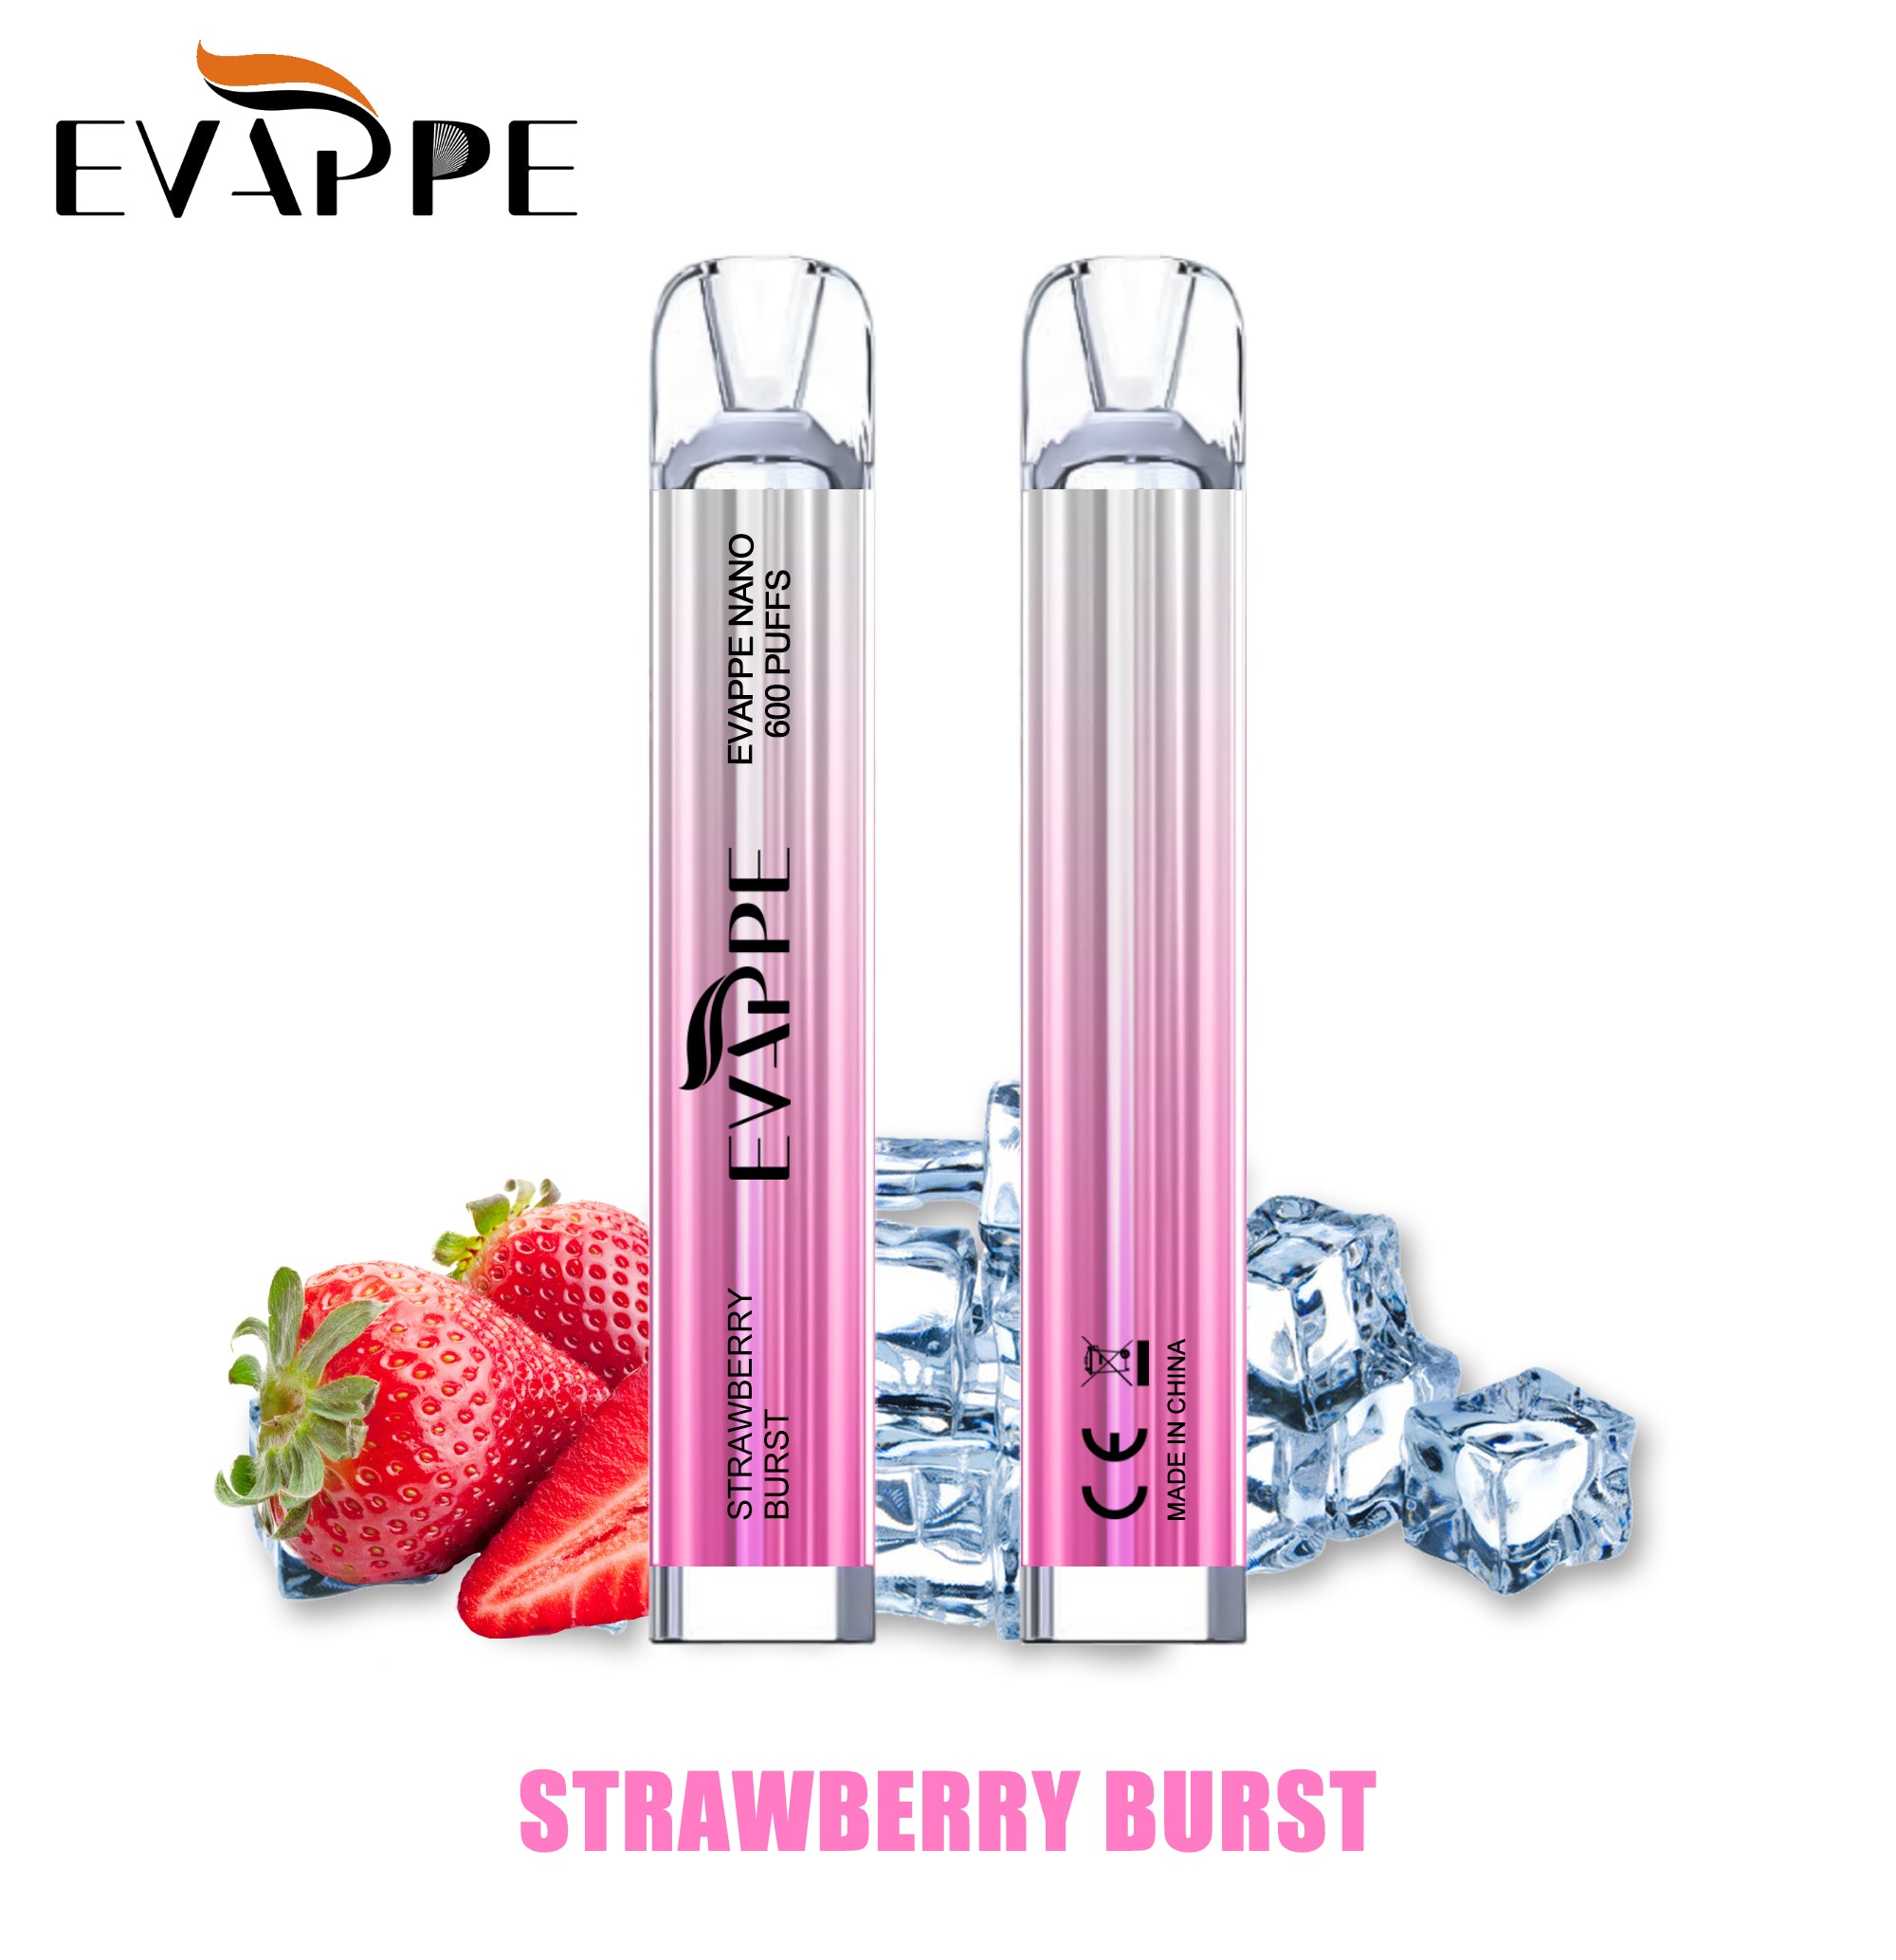 Evappe Nano Strawberry burst 600